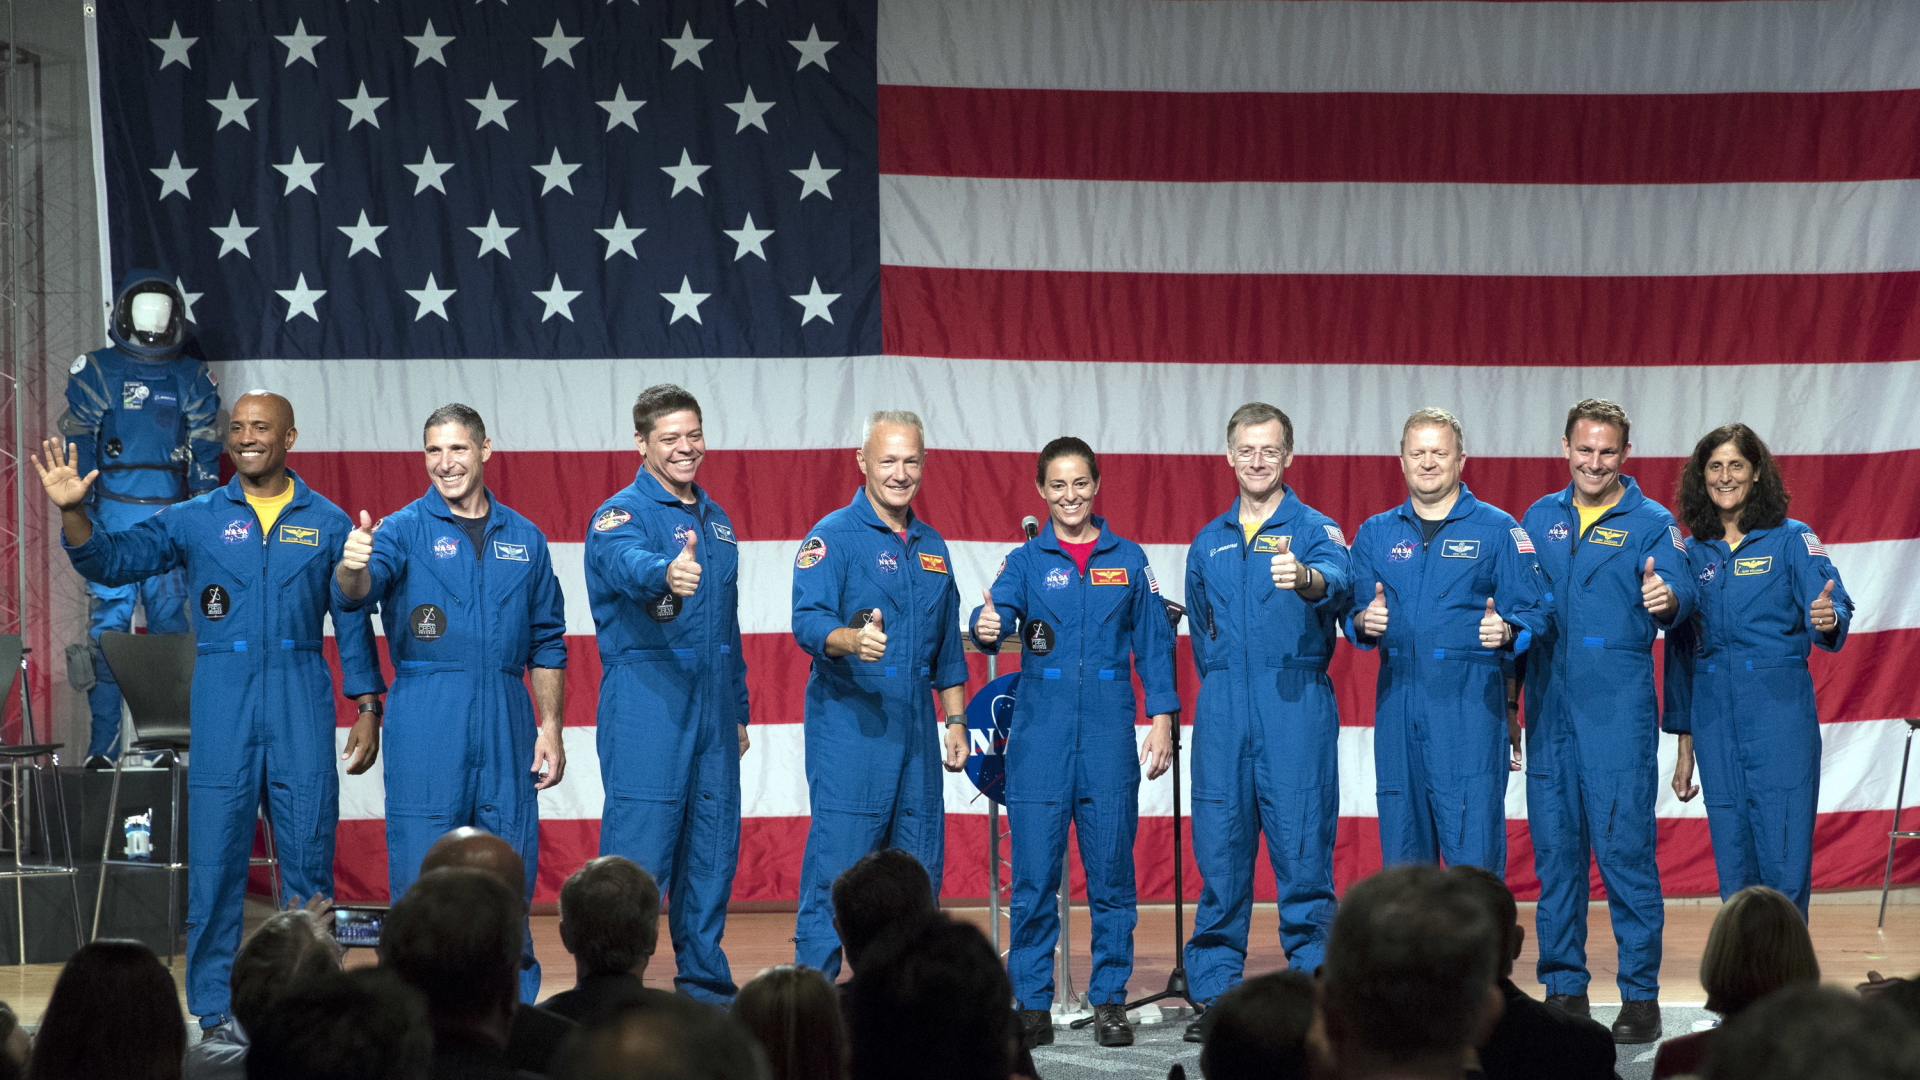 NASA-Astronauten und Astronautinnen heben den Daumen vor einer amerikanischen Flagge.